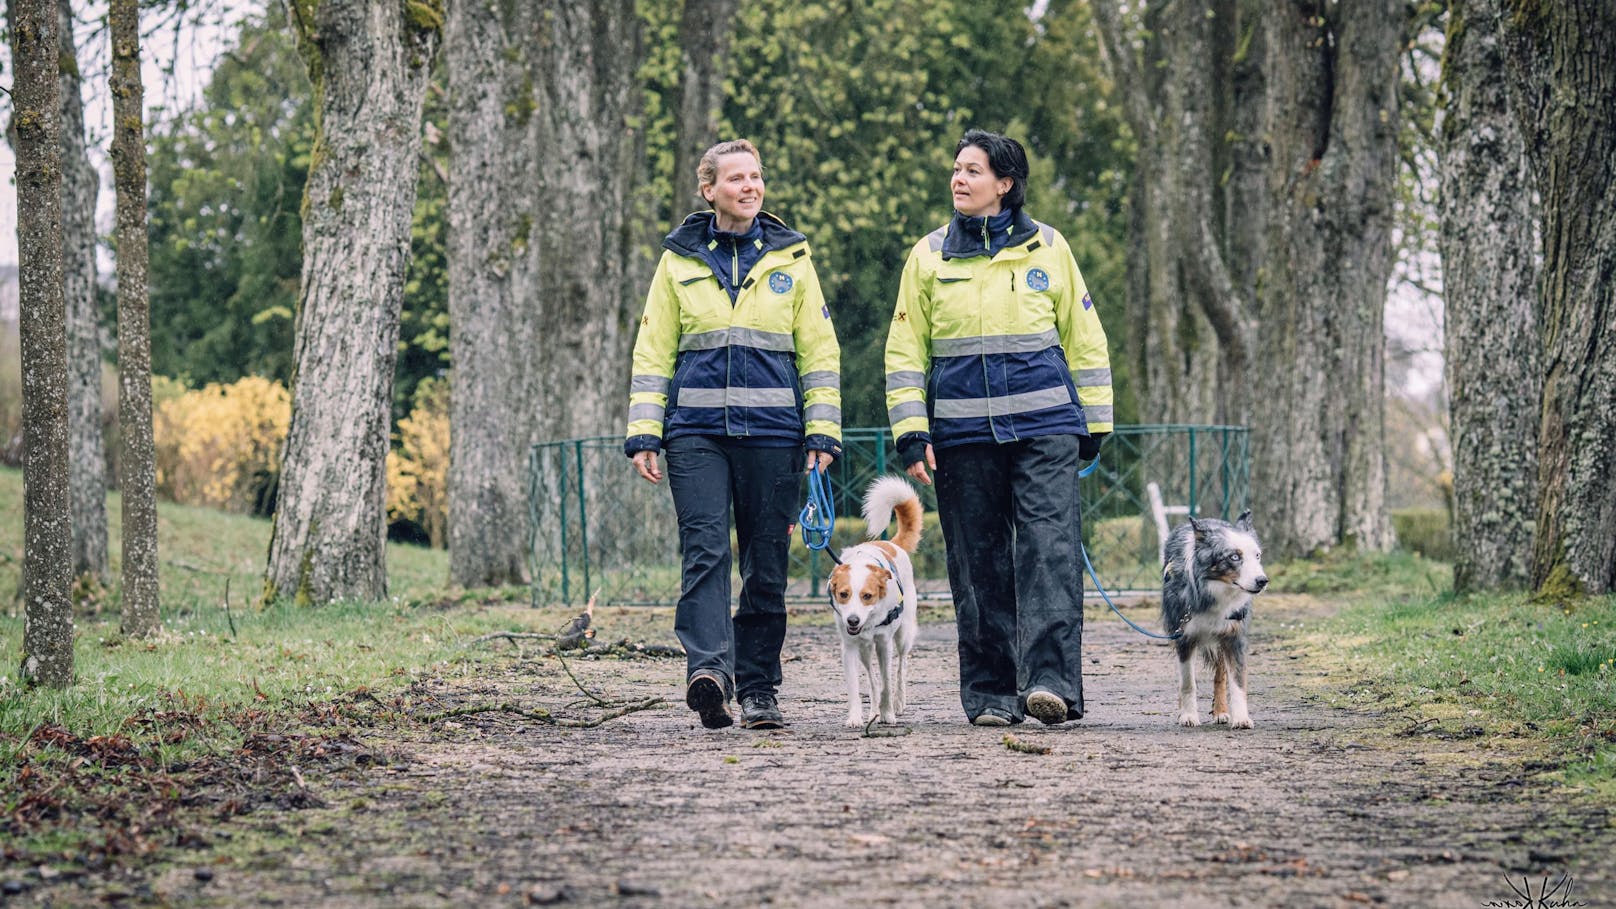 Birgit führt mittlerweile ihren vierten Hund als Rettungshund, bei Martina ist es der fünfte.